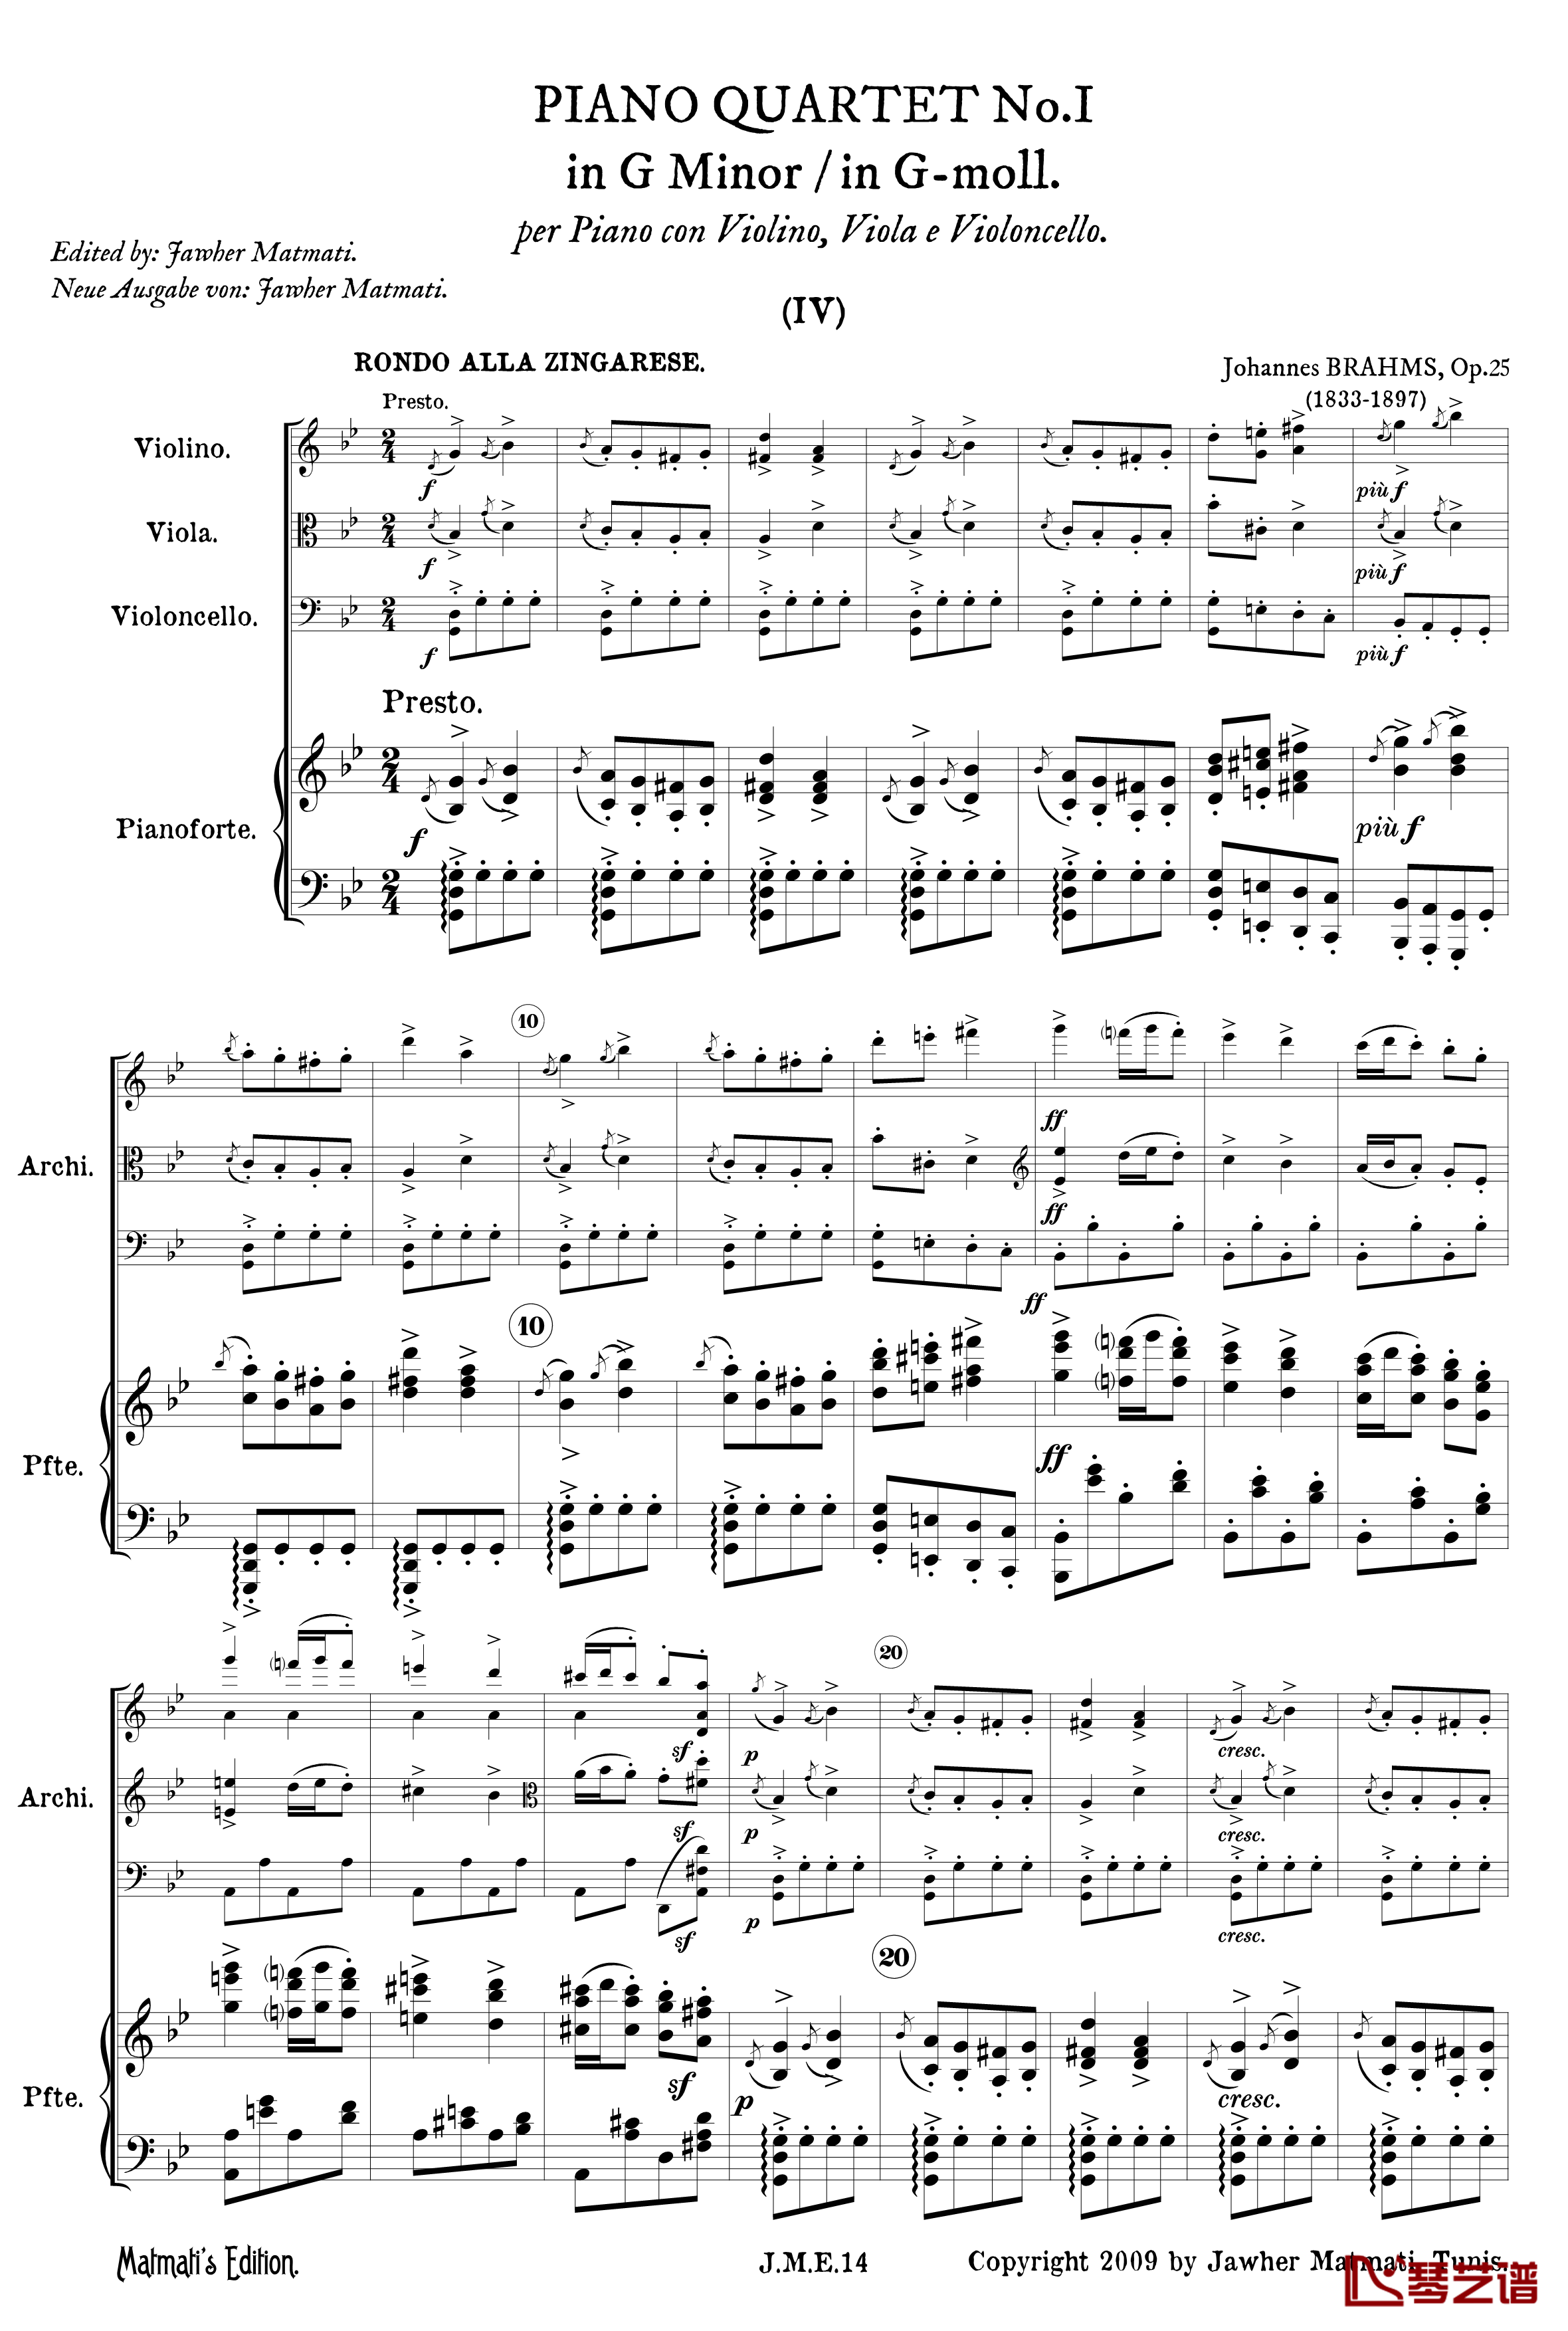 g小调第一钢琴四重奏 Op.25  第四乐章 吉普赛回旋曲钢琴谱-勃拉姆斯3